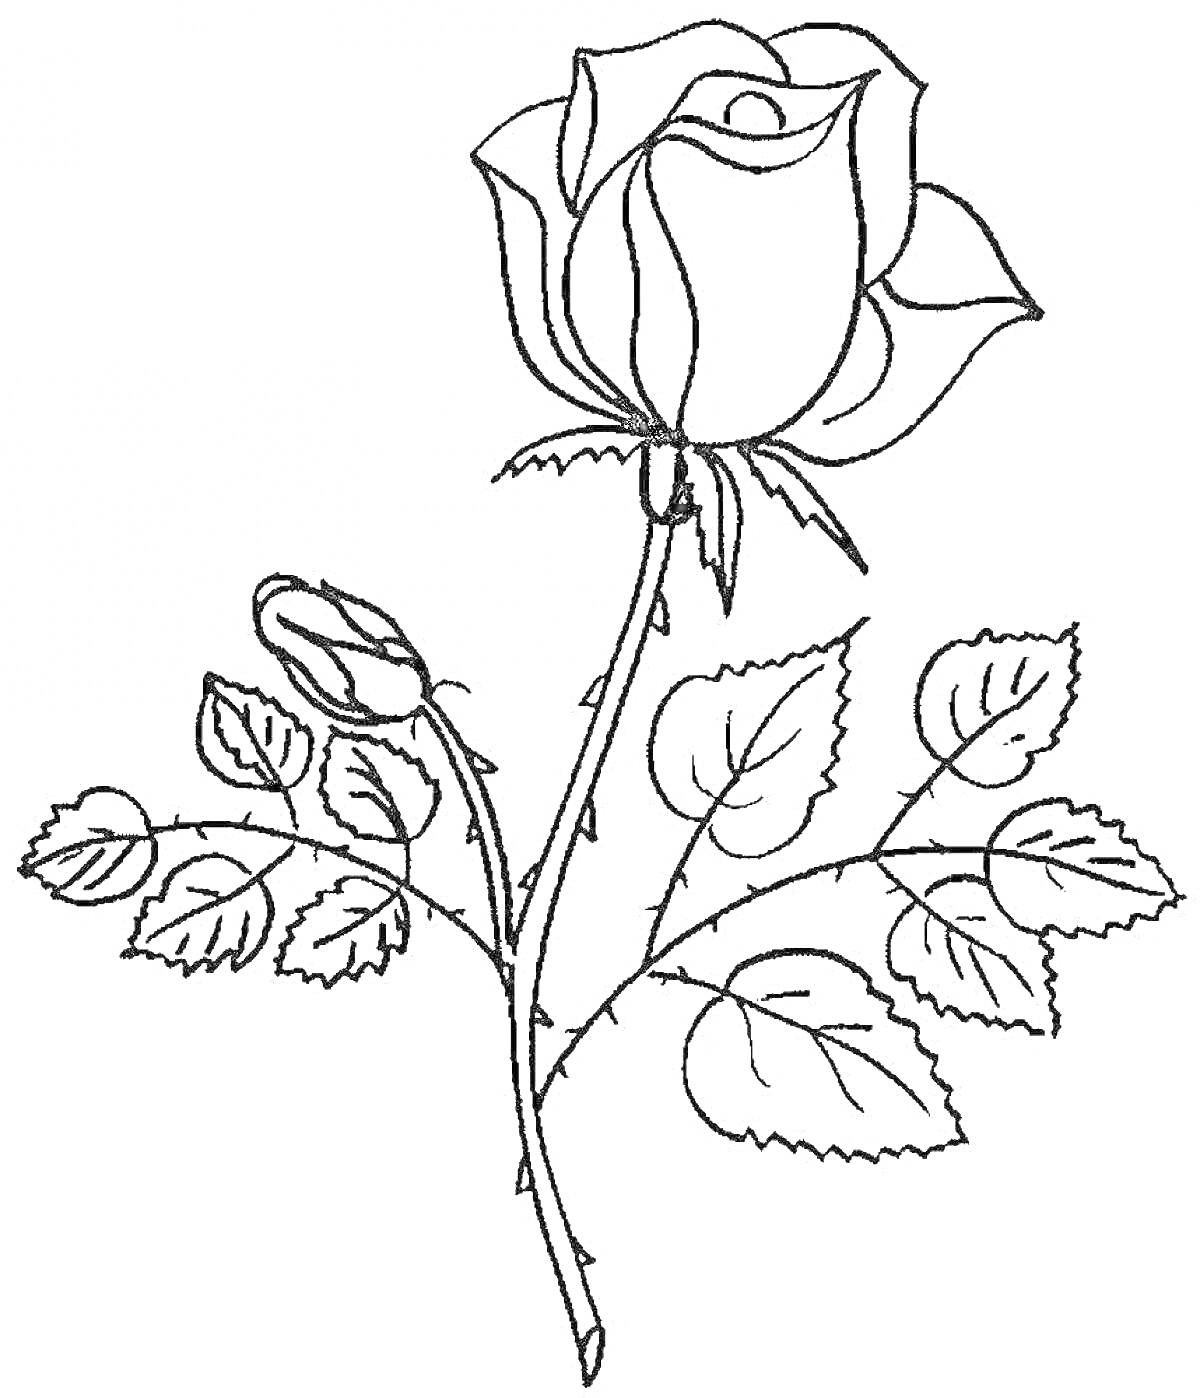 Раскраска Раскраска с изображением двух роз на ветке с листьями